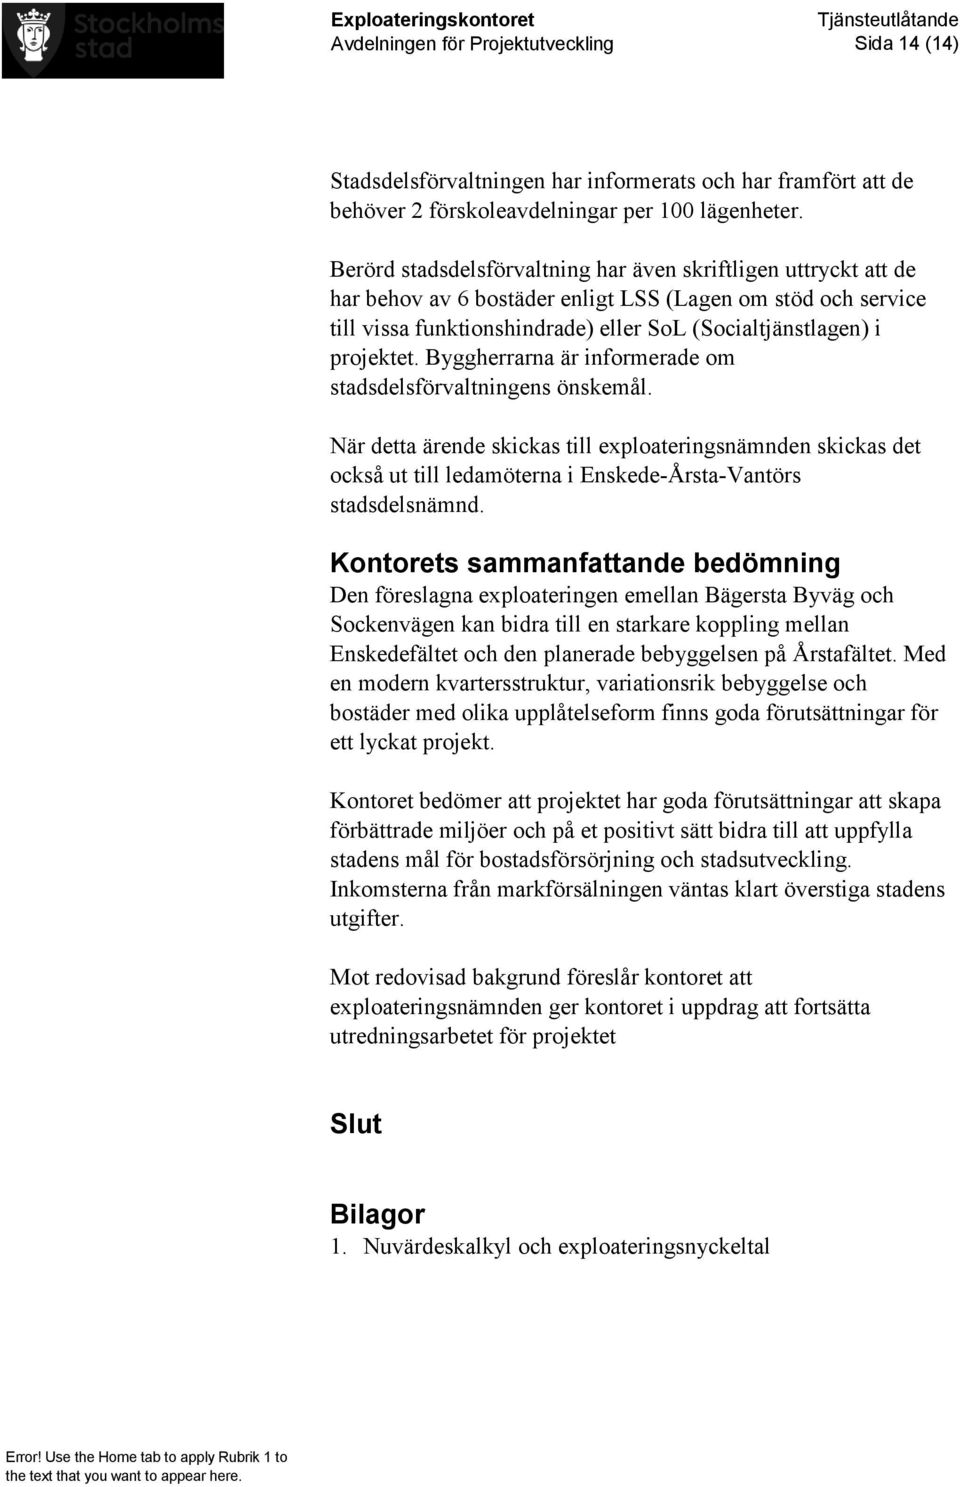 Byggherrarna är informerade om stadsdelsförvaltningens önskemål. När detta ärende skickas till exploateringsnämnden skickas det också ut till ledamöterna i Enskede-Årsta-Vantörs stadsdelsnämnd.